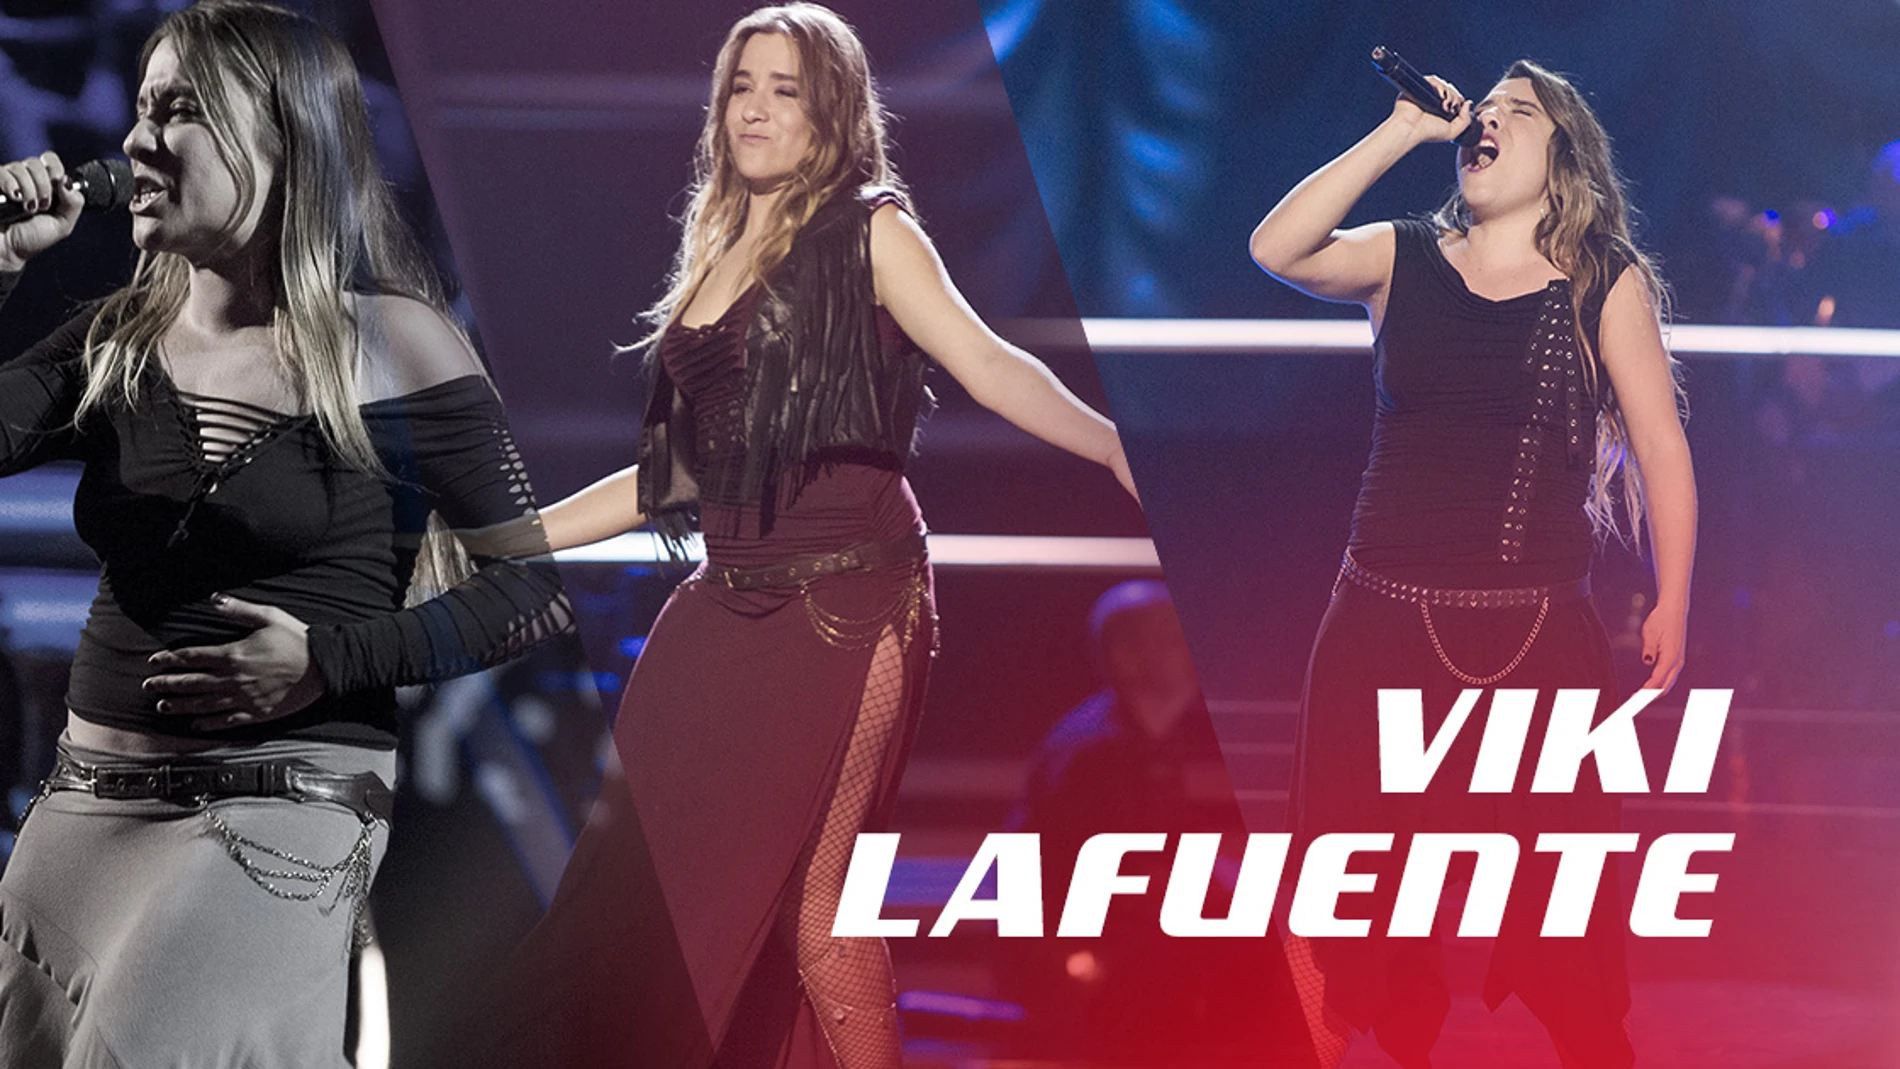 VÍDEO: Así han sido las actuaciones de Viki Lafuente en ‘La Voz’